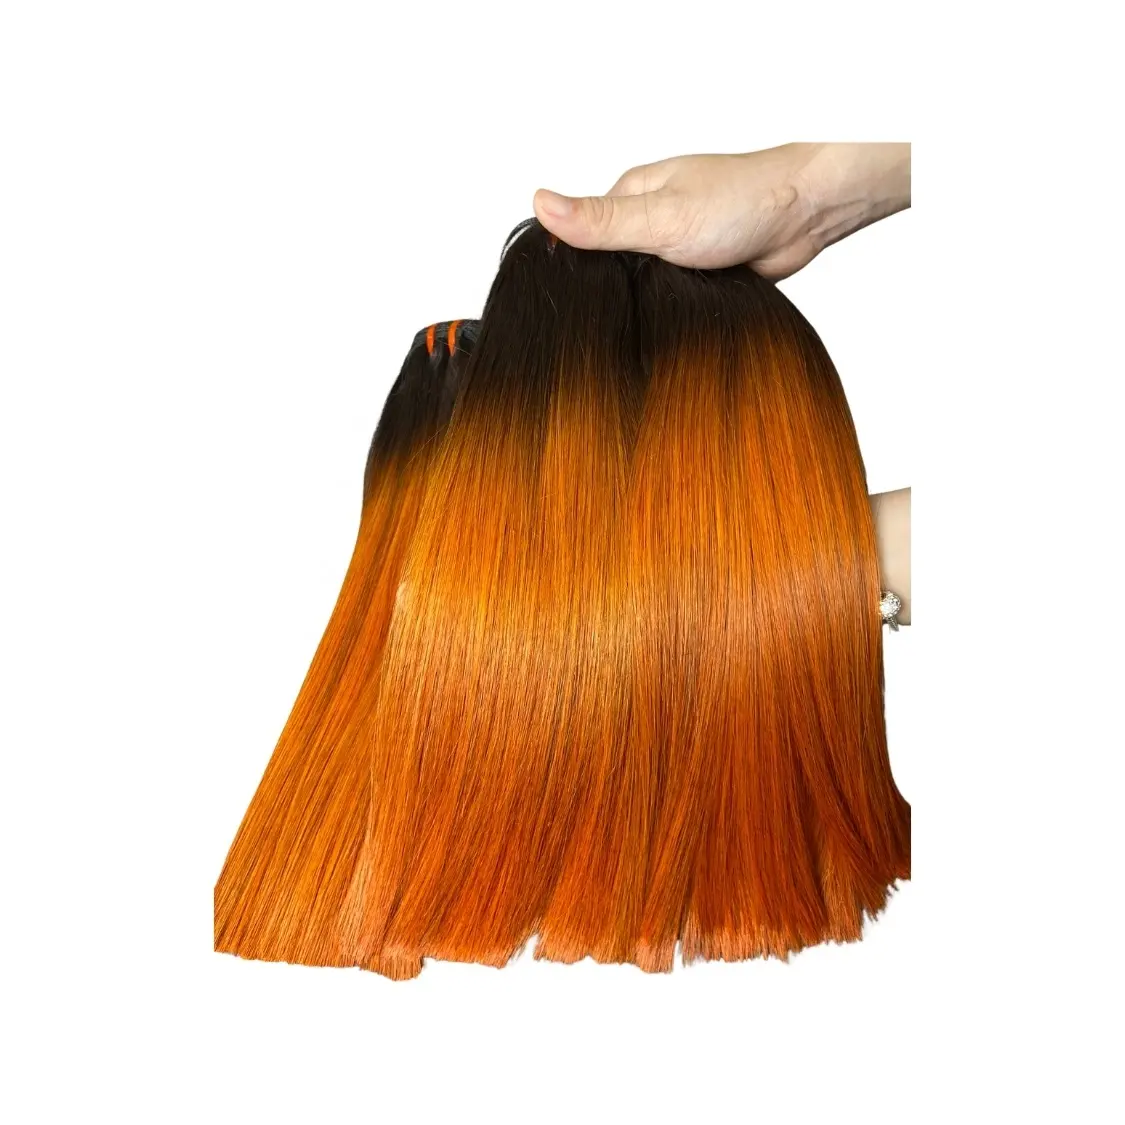 Prix abordable sain bout fort coloré miroir os droit extensions de cheveux vietnamien cheveux bruts HD dentelle frontale perruques